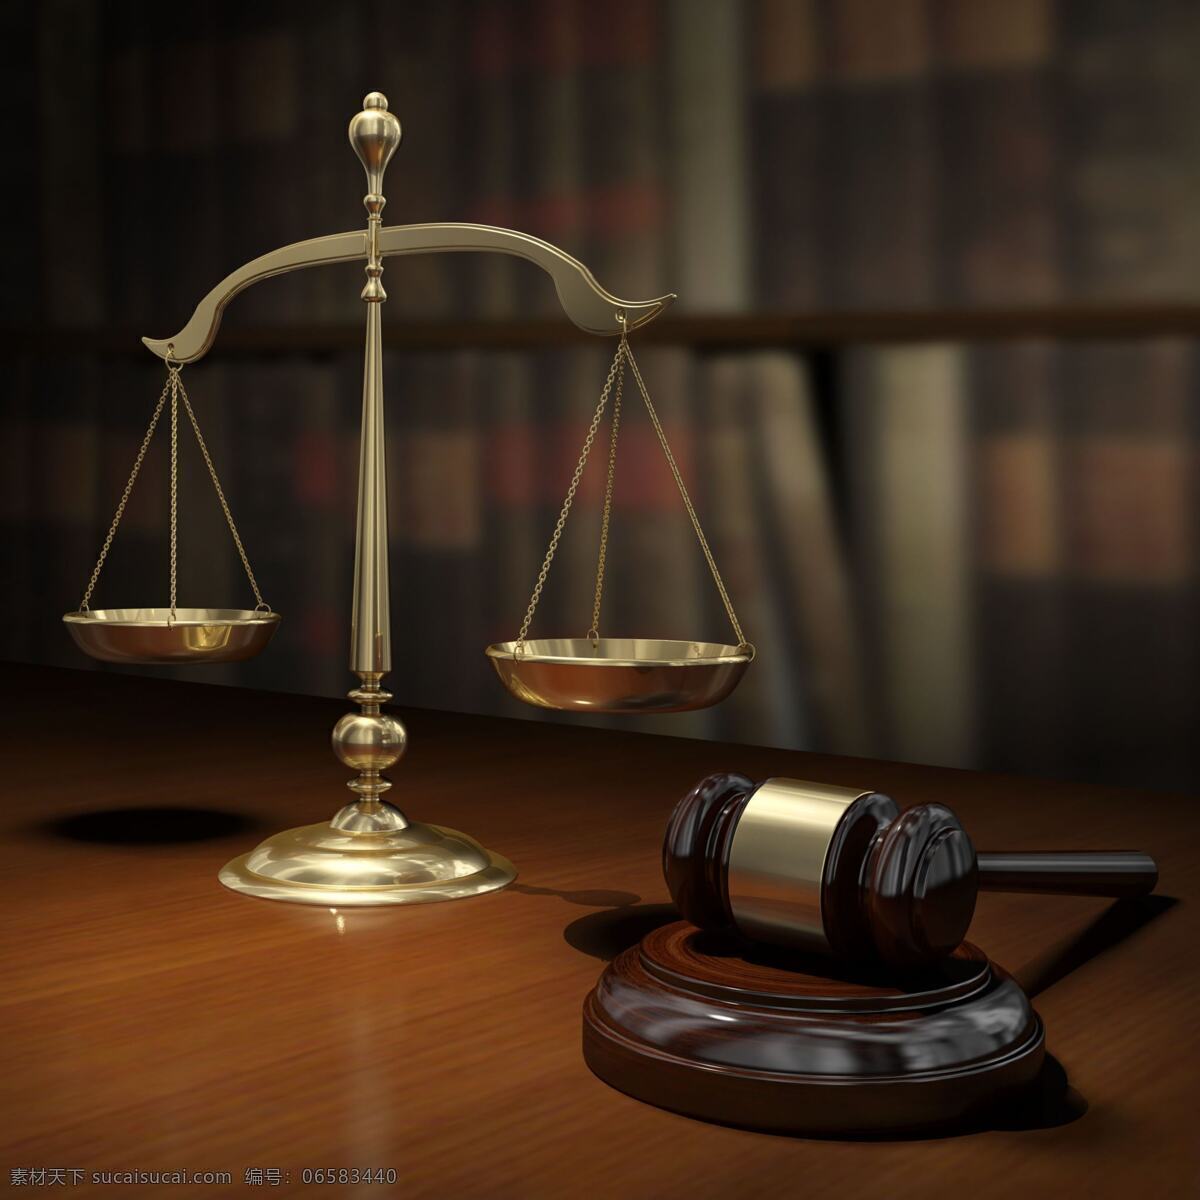 法官槌与天平 法官槌 木槌 书籍 天平 正义 公平 象征 3d 3d物体 3d设计 3d作品